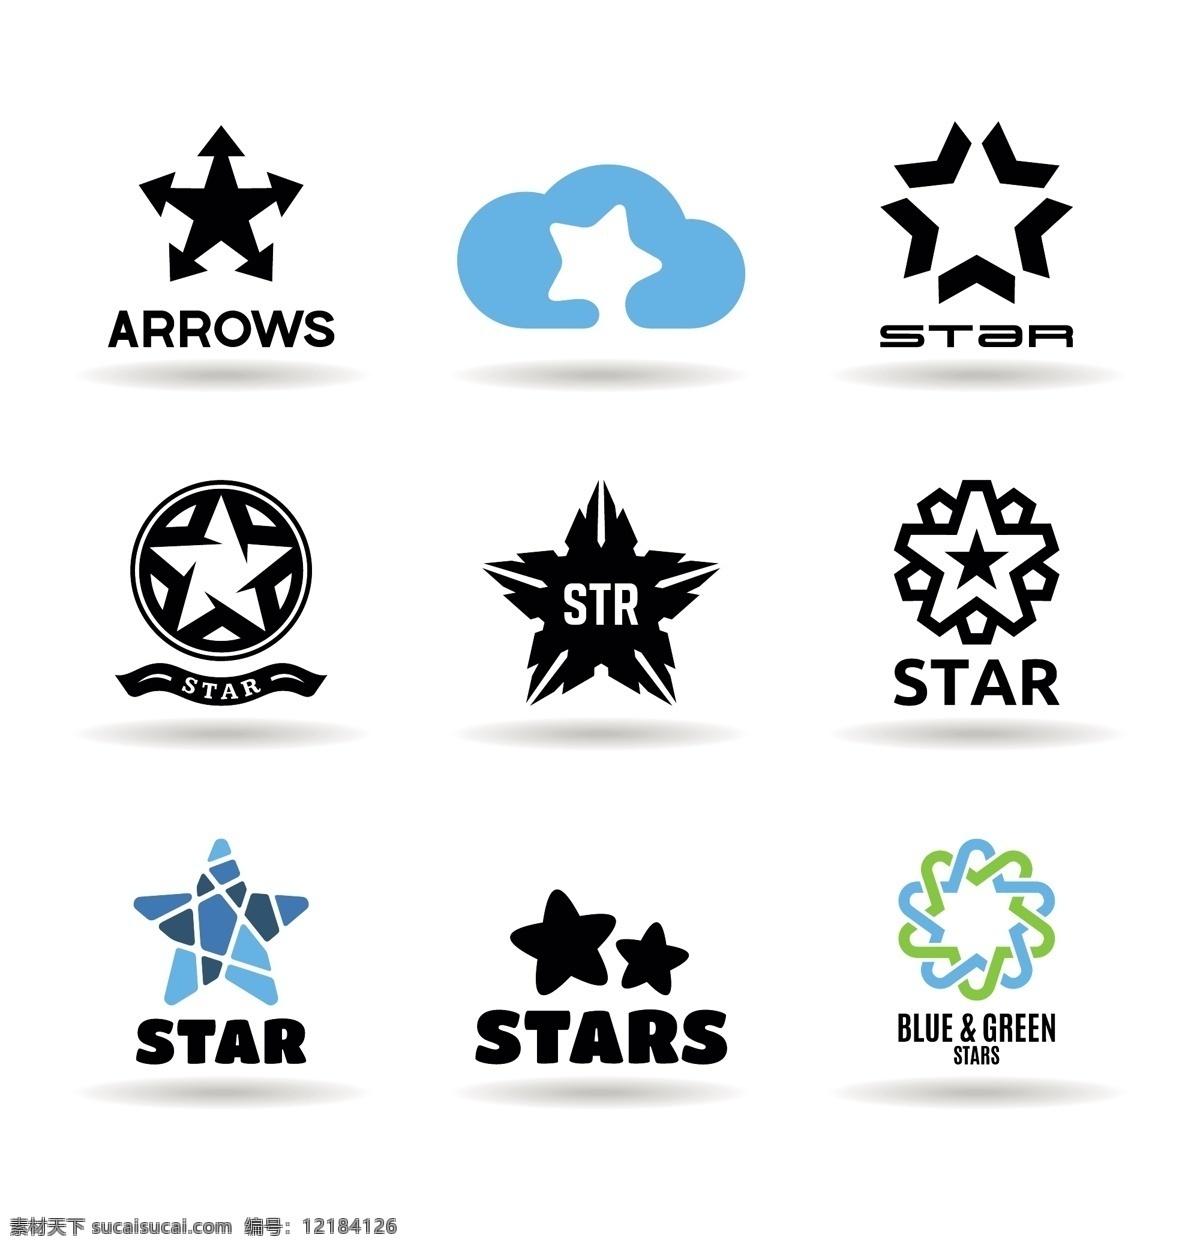 星星logo 五角星 logo 标志设计 创意logo logo图形 商标设计 行业标志 标志图标 矢量素材 白色